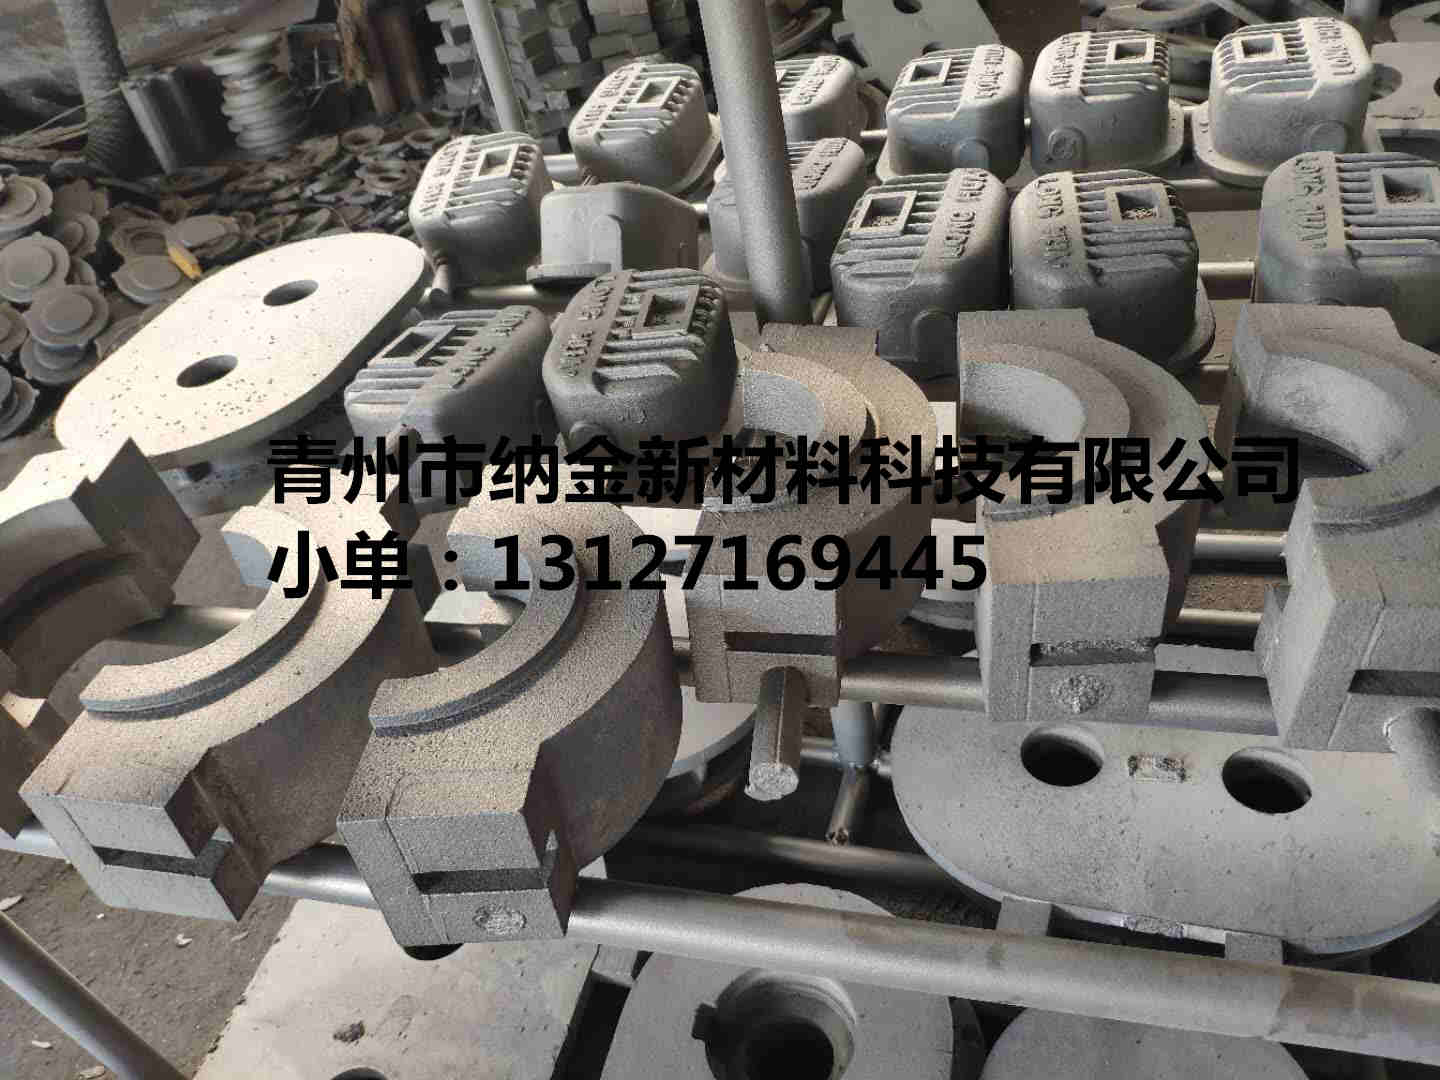 青州铸造厂 青州纳金铸造厂 铸造厂铸造生铁铸件 铸件加工厂 13127169445  青州纳金铸造厂生铁铸件